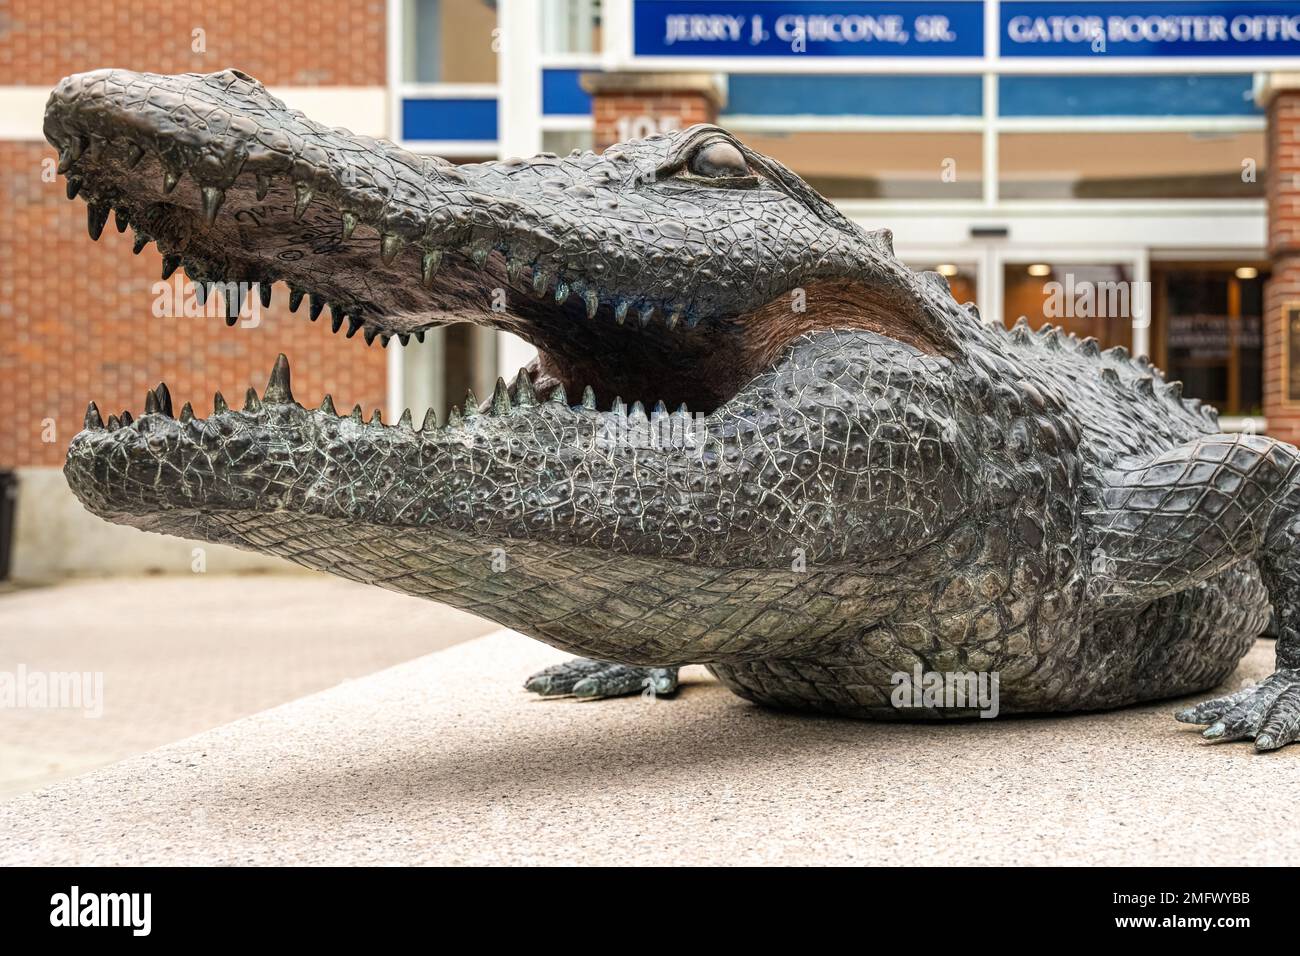 Statue du Gator de Floride devant le bureau du Gator Booster au stade Ben Hill Griffin (également connu sous le nom de « The Swamp ») sur le campus de l'Université de Floride. Banque D'Images